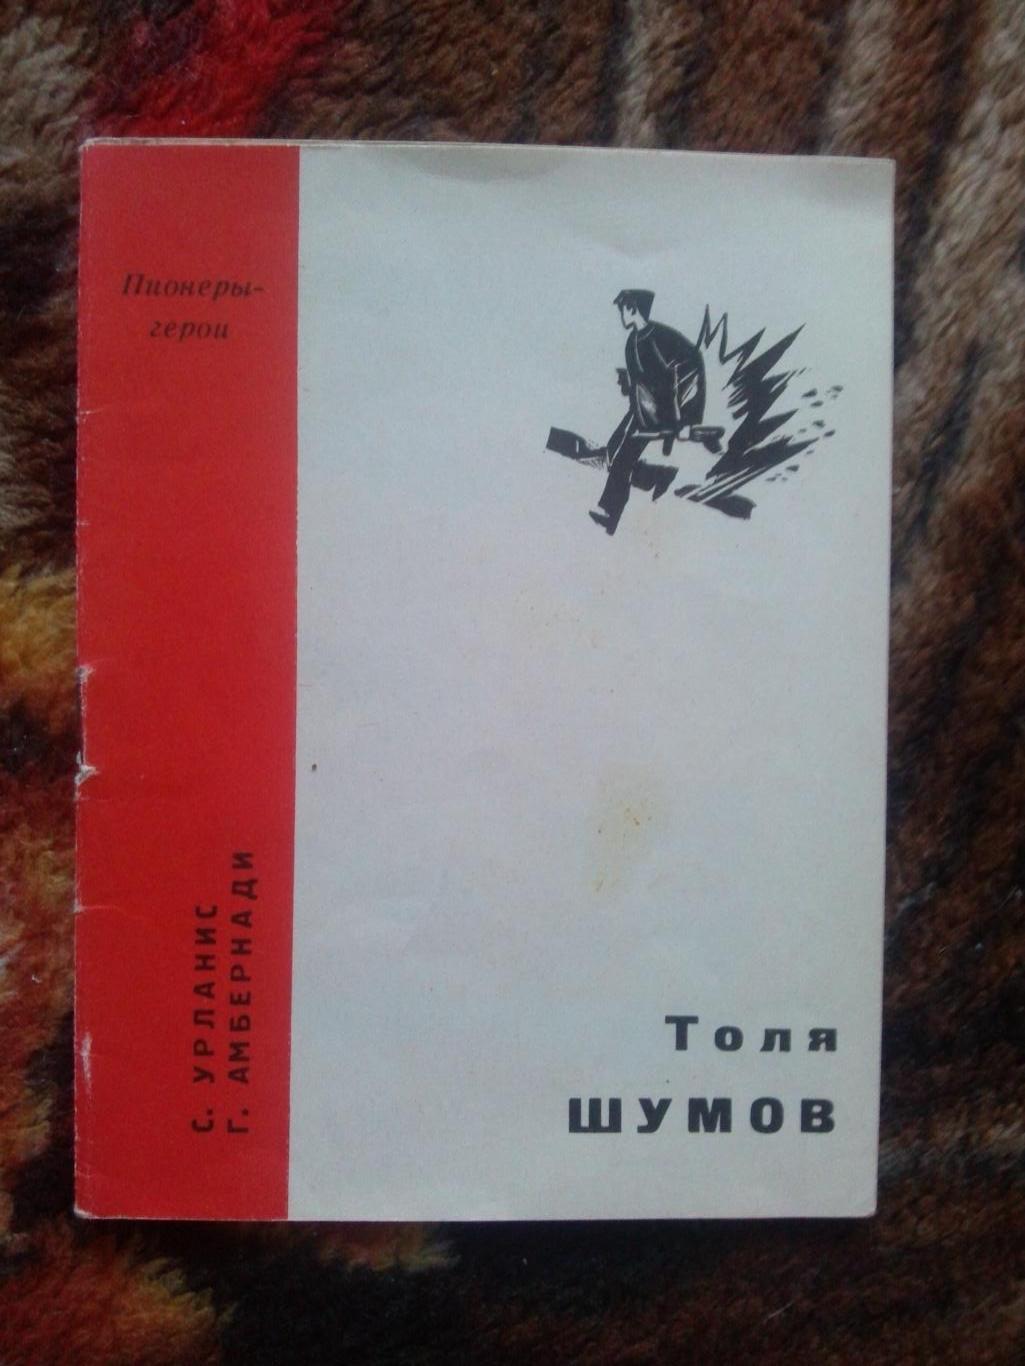 Пионеры-герои (Плакат + брошюра) 1967 г. Толя Шумов (Пионер , агитация) 3